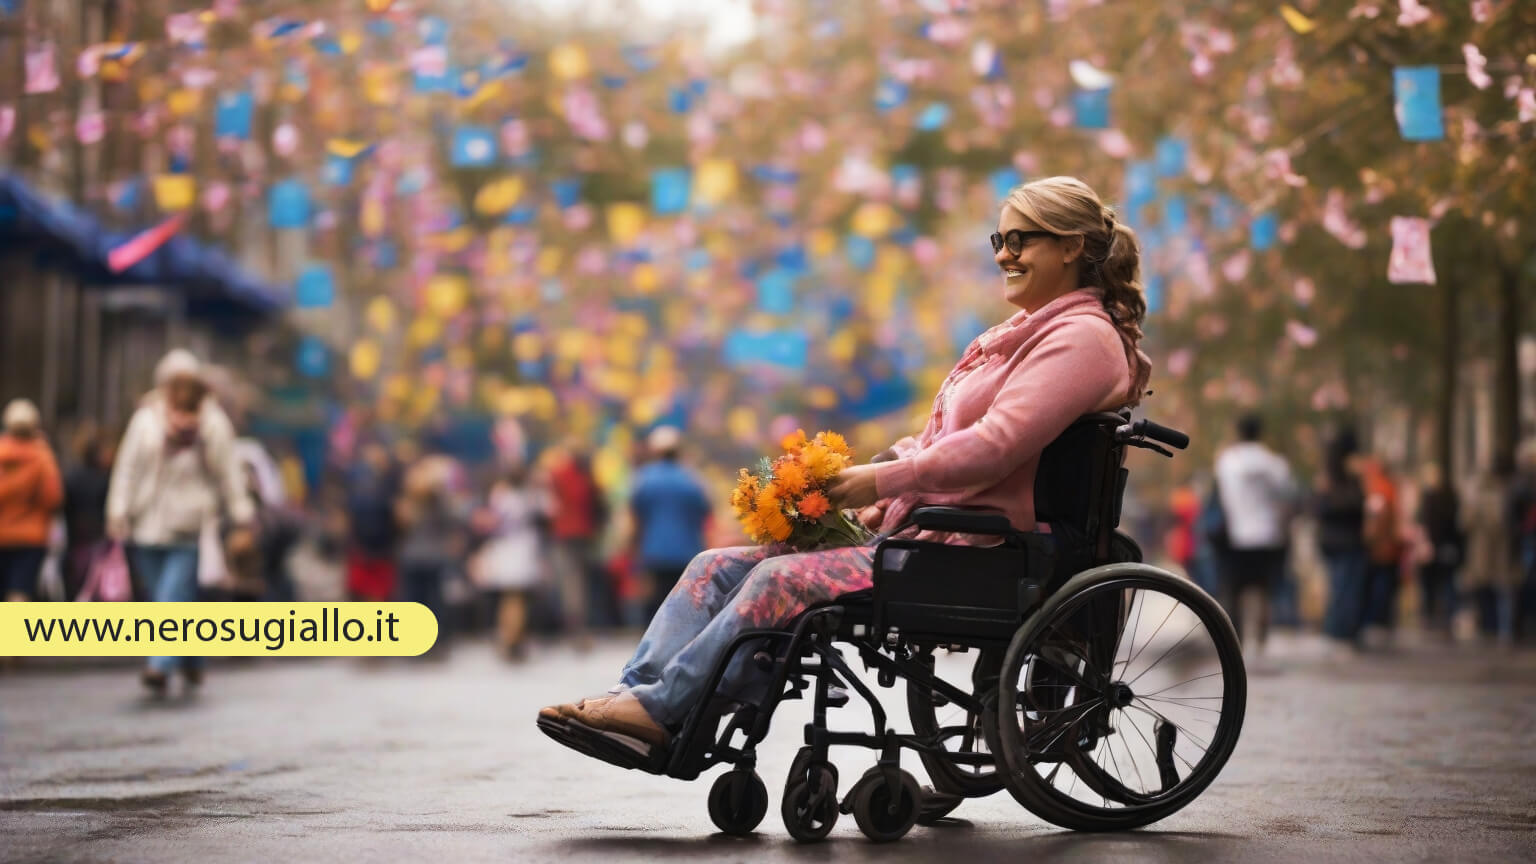 Al momento stai visualizzando Giornata Internazionale per le Persone con Disabilità